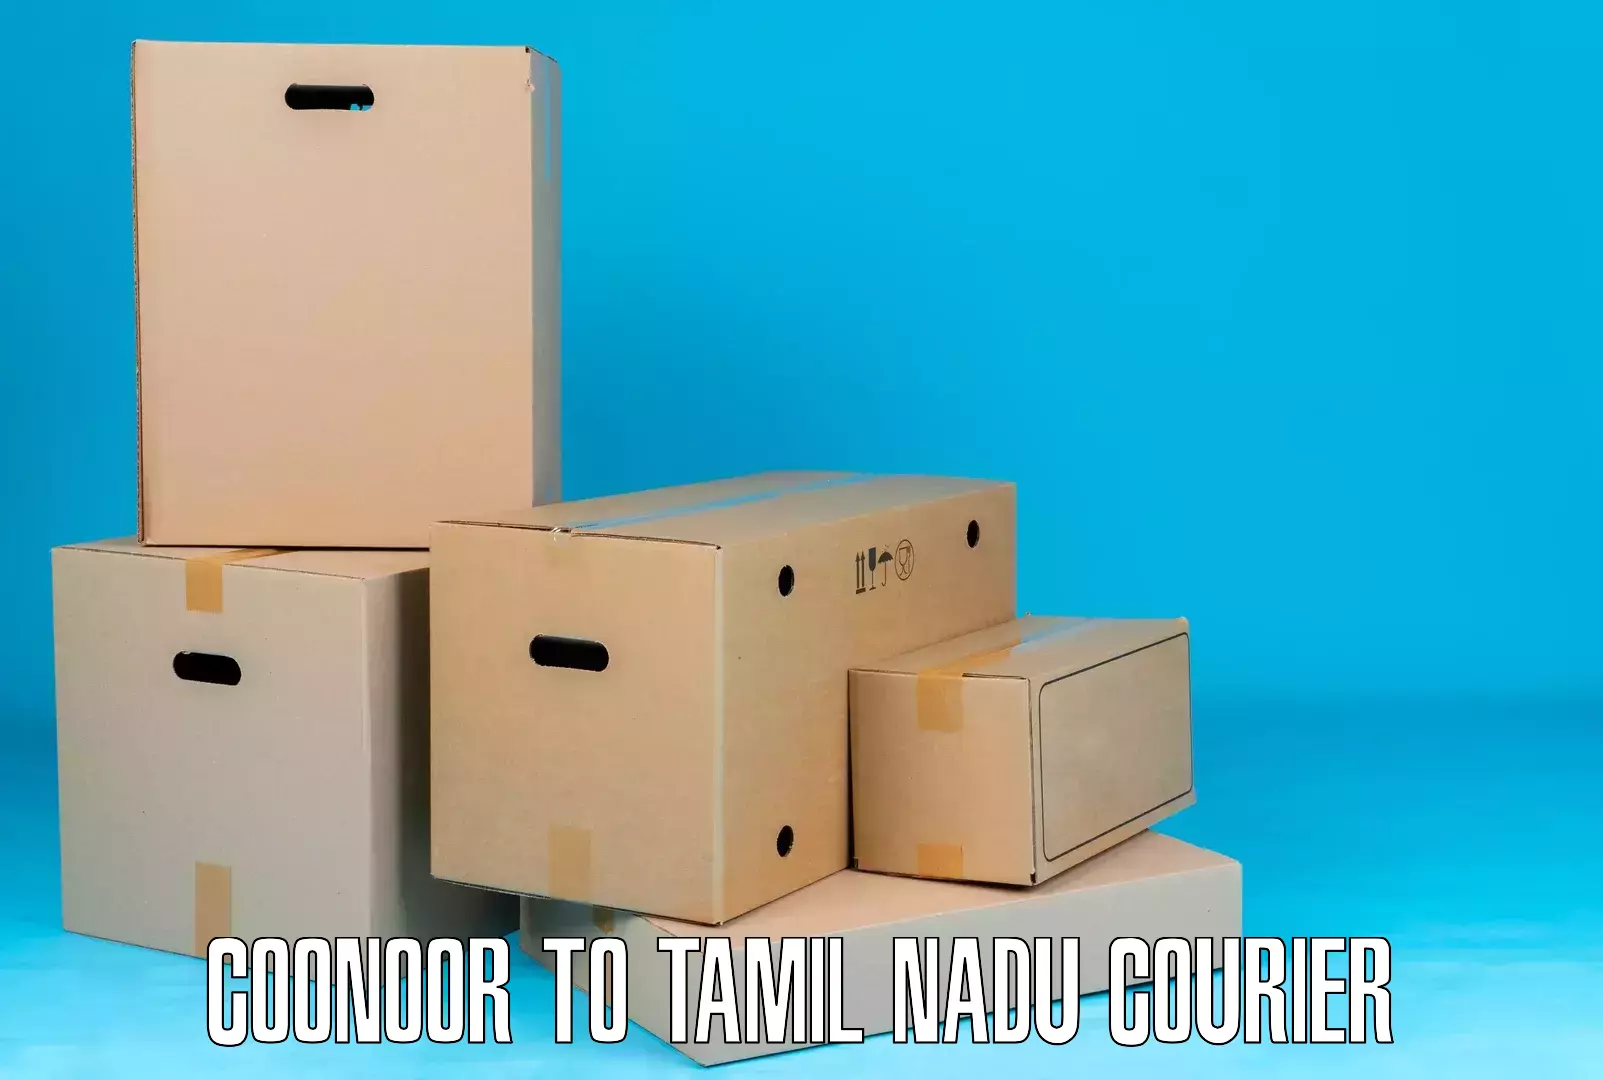 International parcel service Coonoor to Kallakurichi